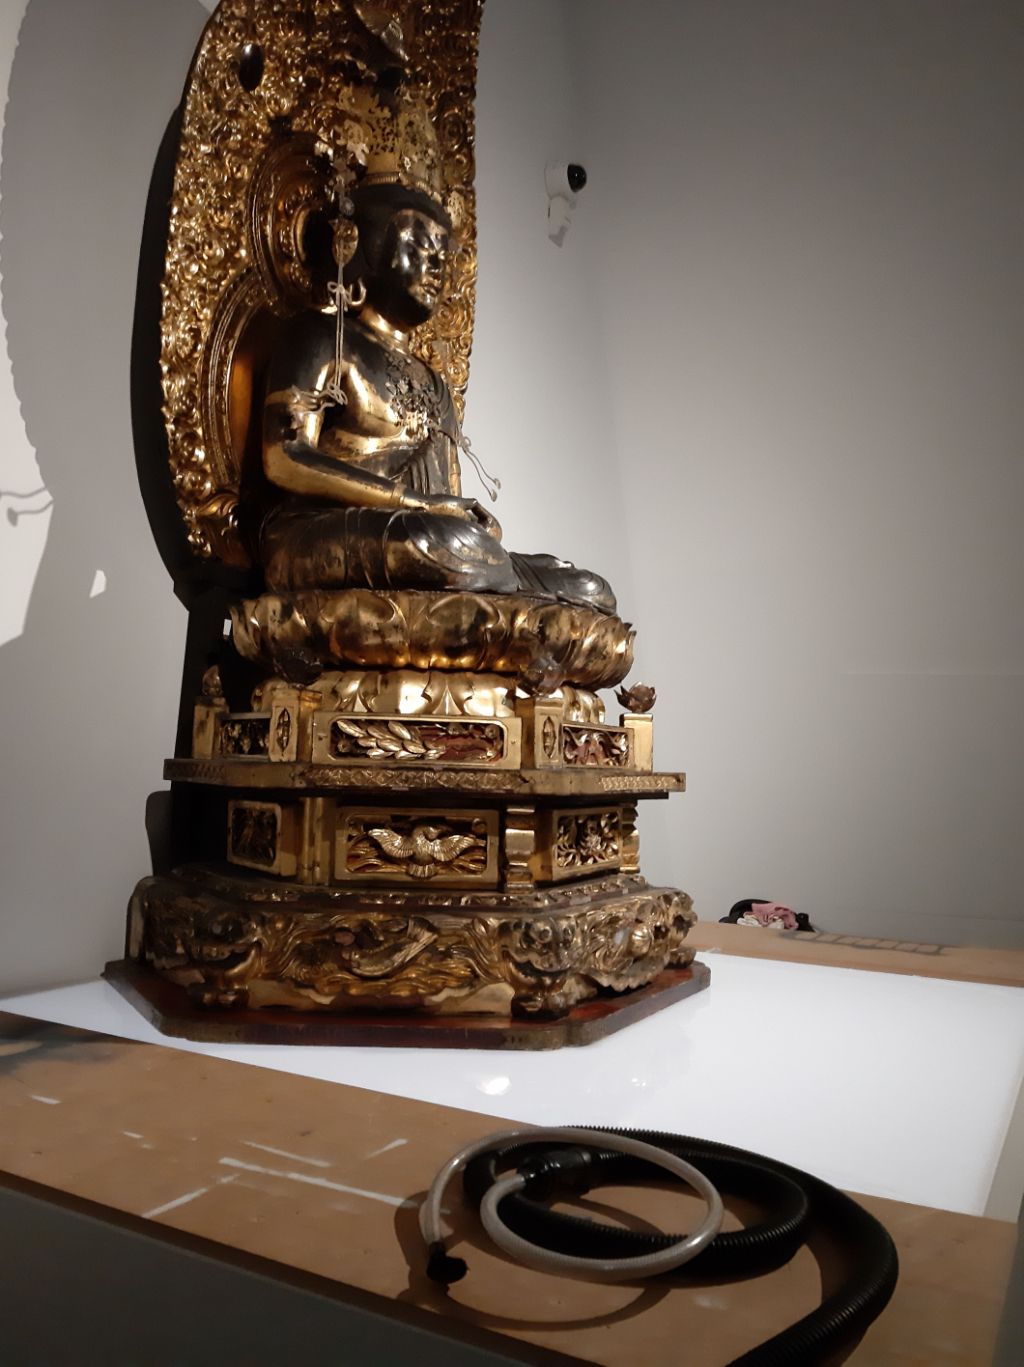 Auf einem braun-weissen Podest thront eine gold-schwarze Buddhastatue. Vor ihr liegen durchsichtige und schwarze Schläuche.